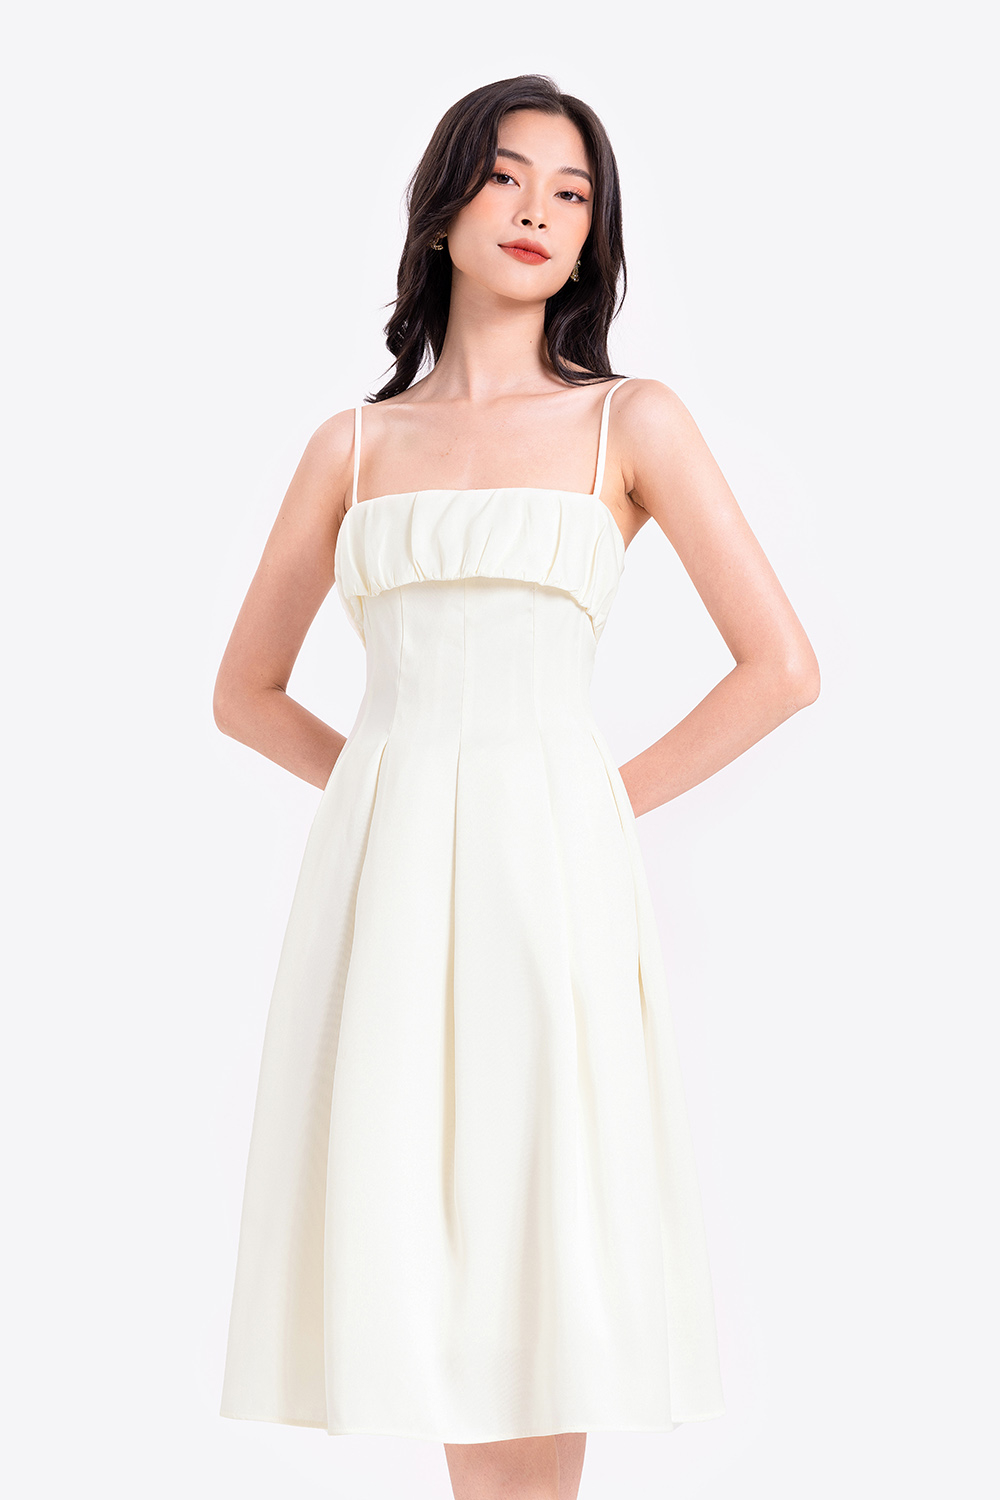 Top 6 mẫu váy trắng đẹp không lối thoát